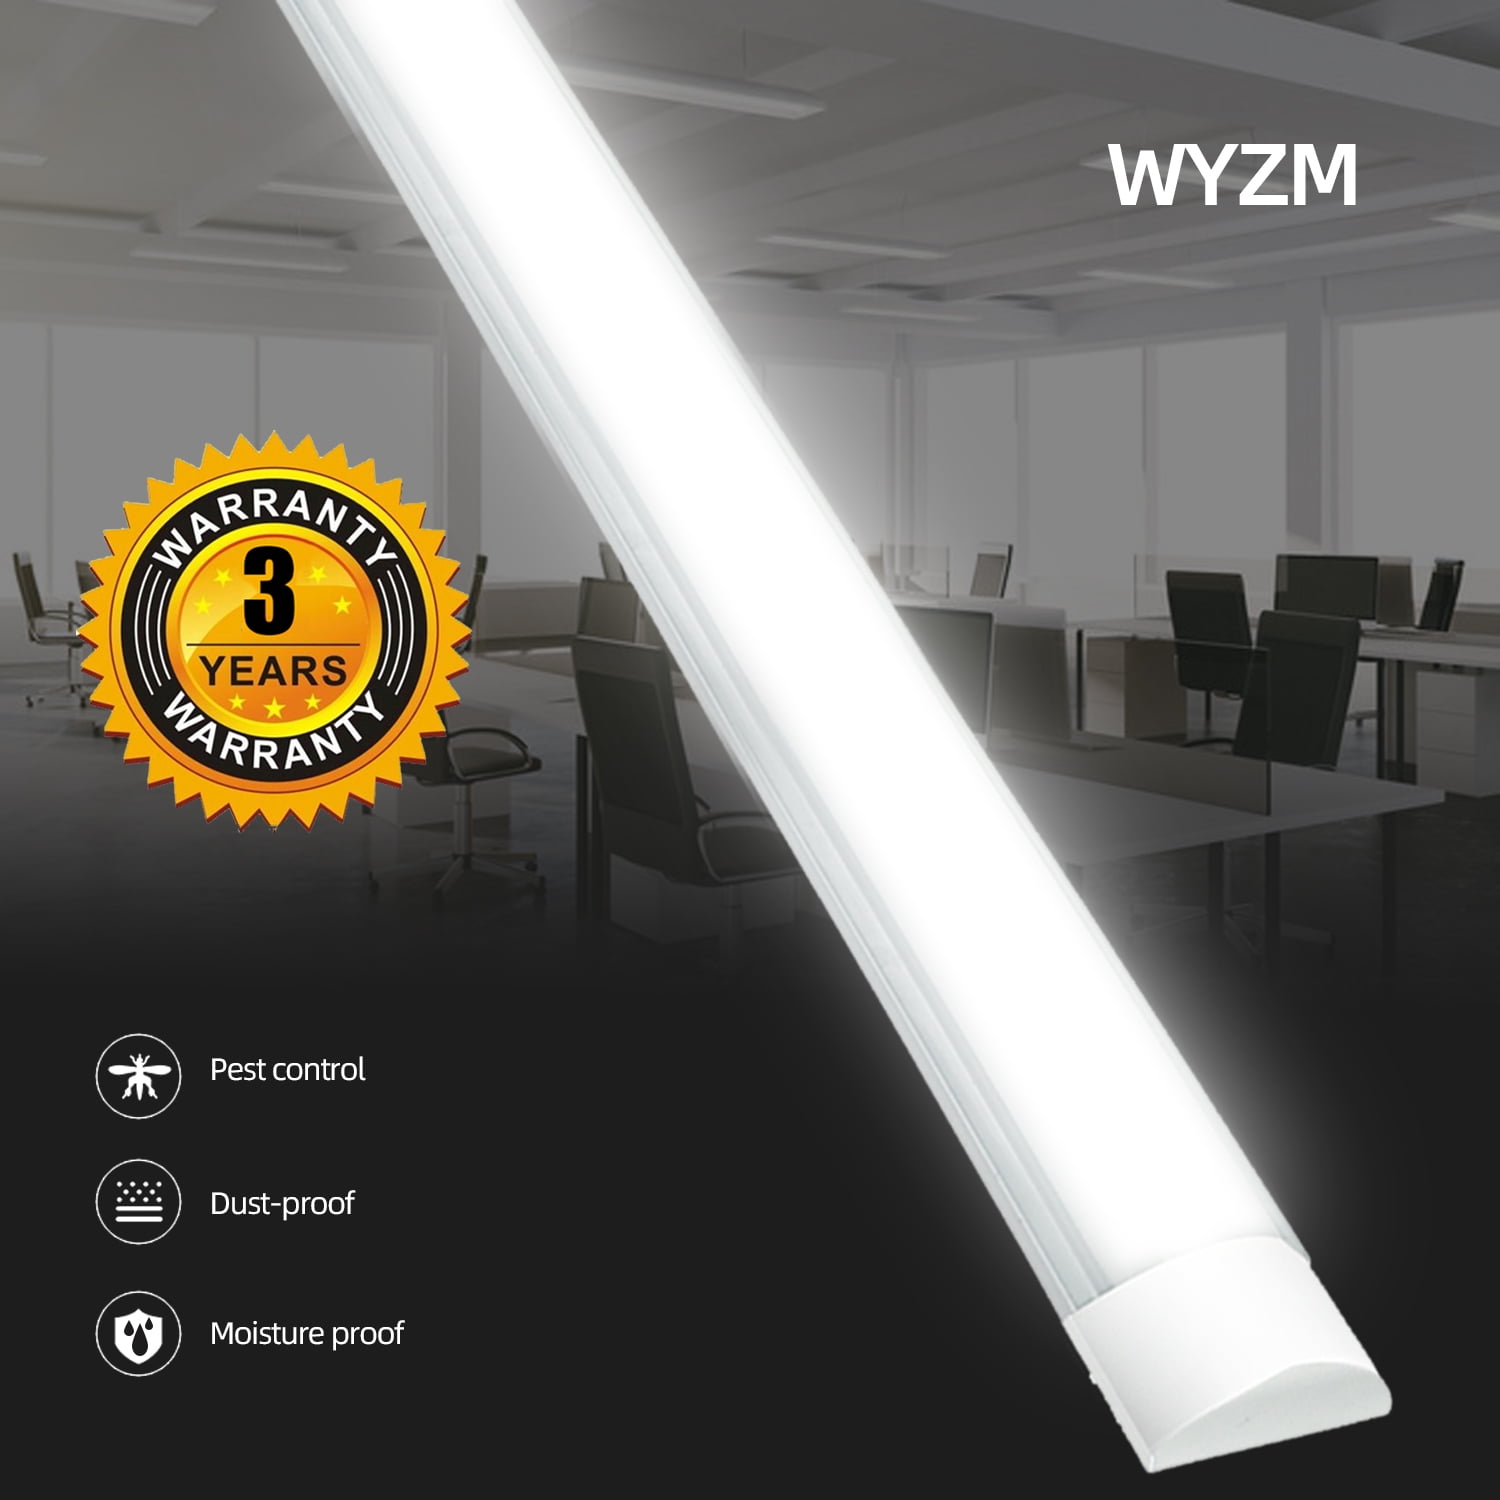 4FT 50W 120cm LED Batten Linear Tube Light Bar Ceiling Fixture Warm White Lamp 